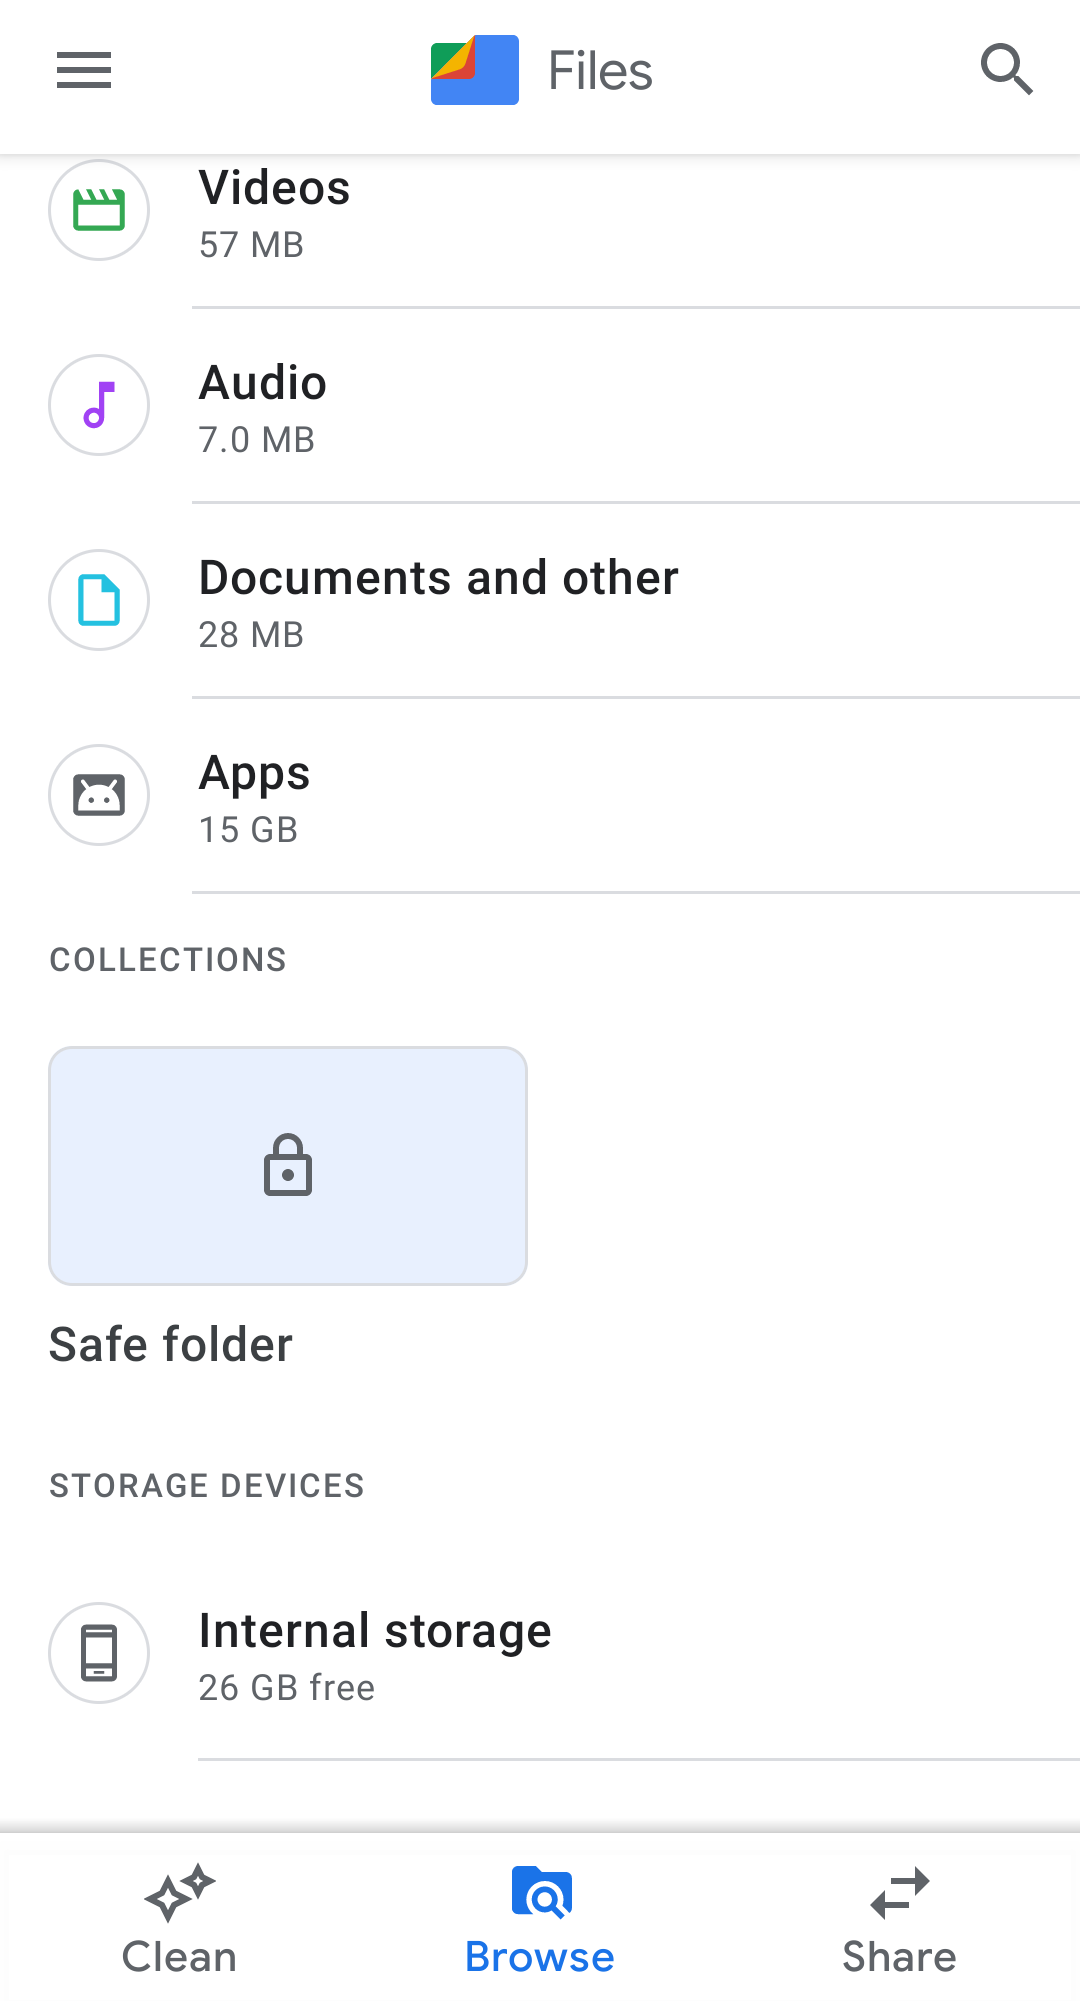 Files by Google Safe Folder